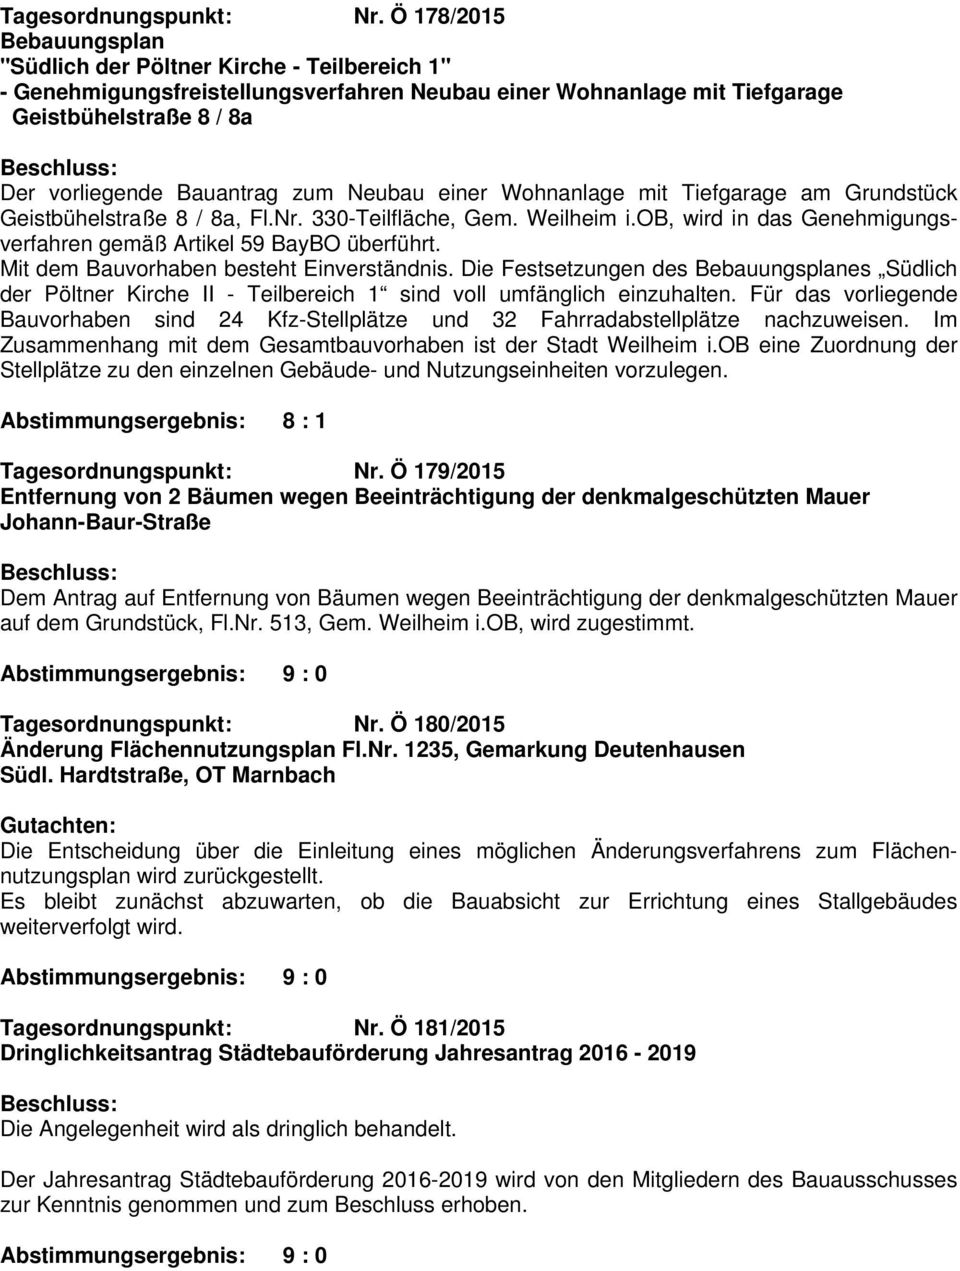 Neubau einer Wohnanlage mit Tiefgarage am Grundstück Geistbühelstraße 8 / 8a, Fl.Nr. 330-Teilfläche, Gem. Weilheim i.ob, wird in das Genehmigungsverfahren gemäß Artikel 59 BayBO überführt.